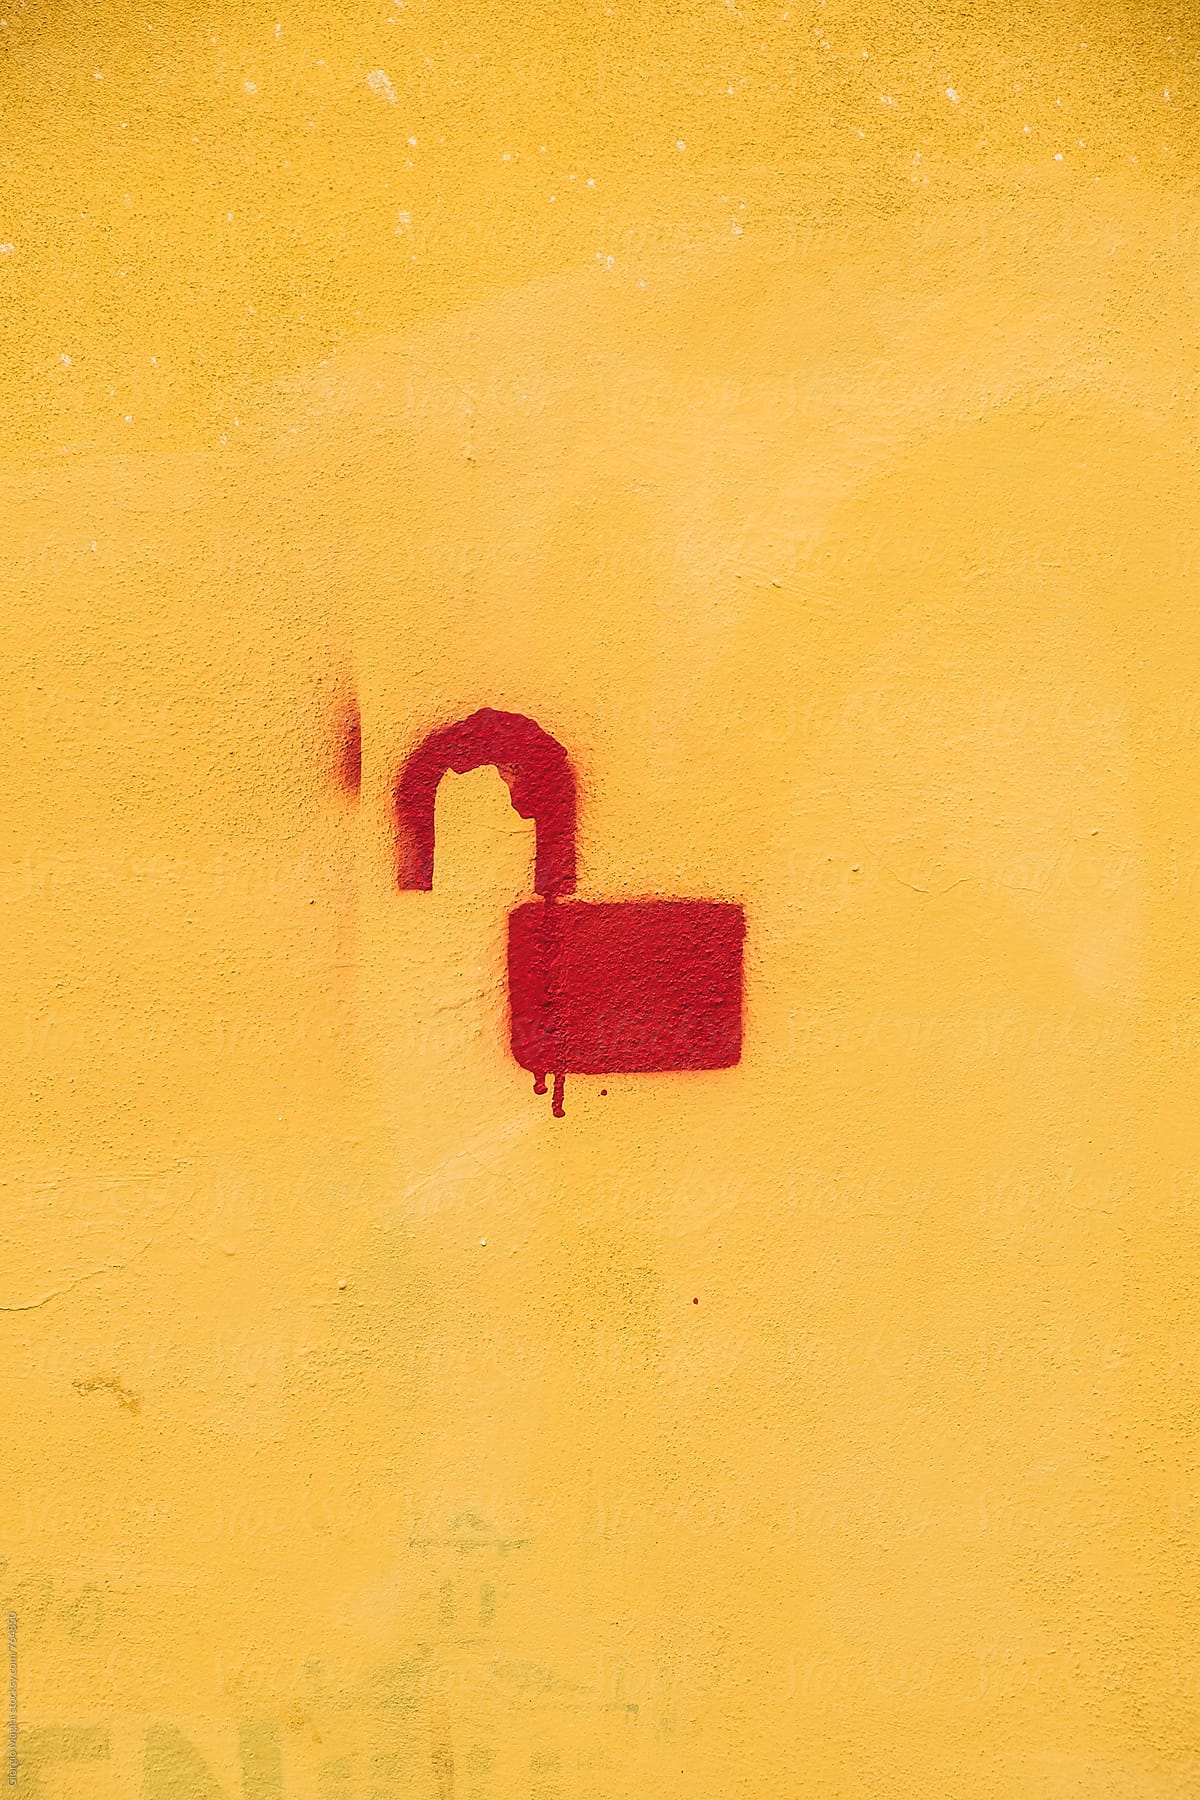 Unlocked Lock Stencil Graffiti on Yellow Plaster Wall